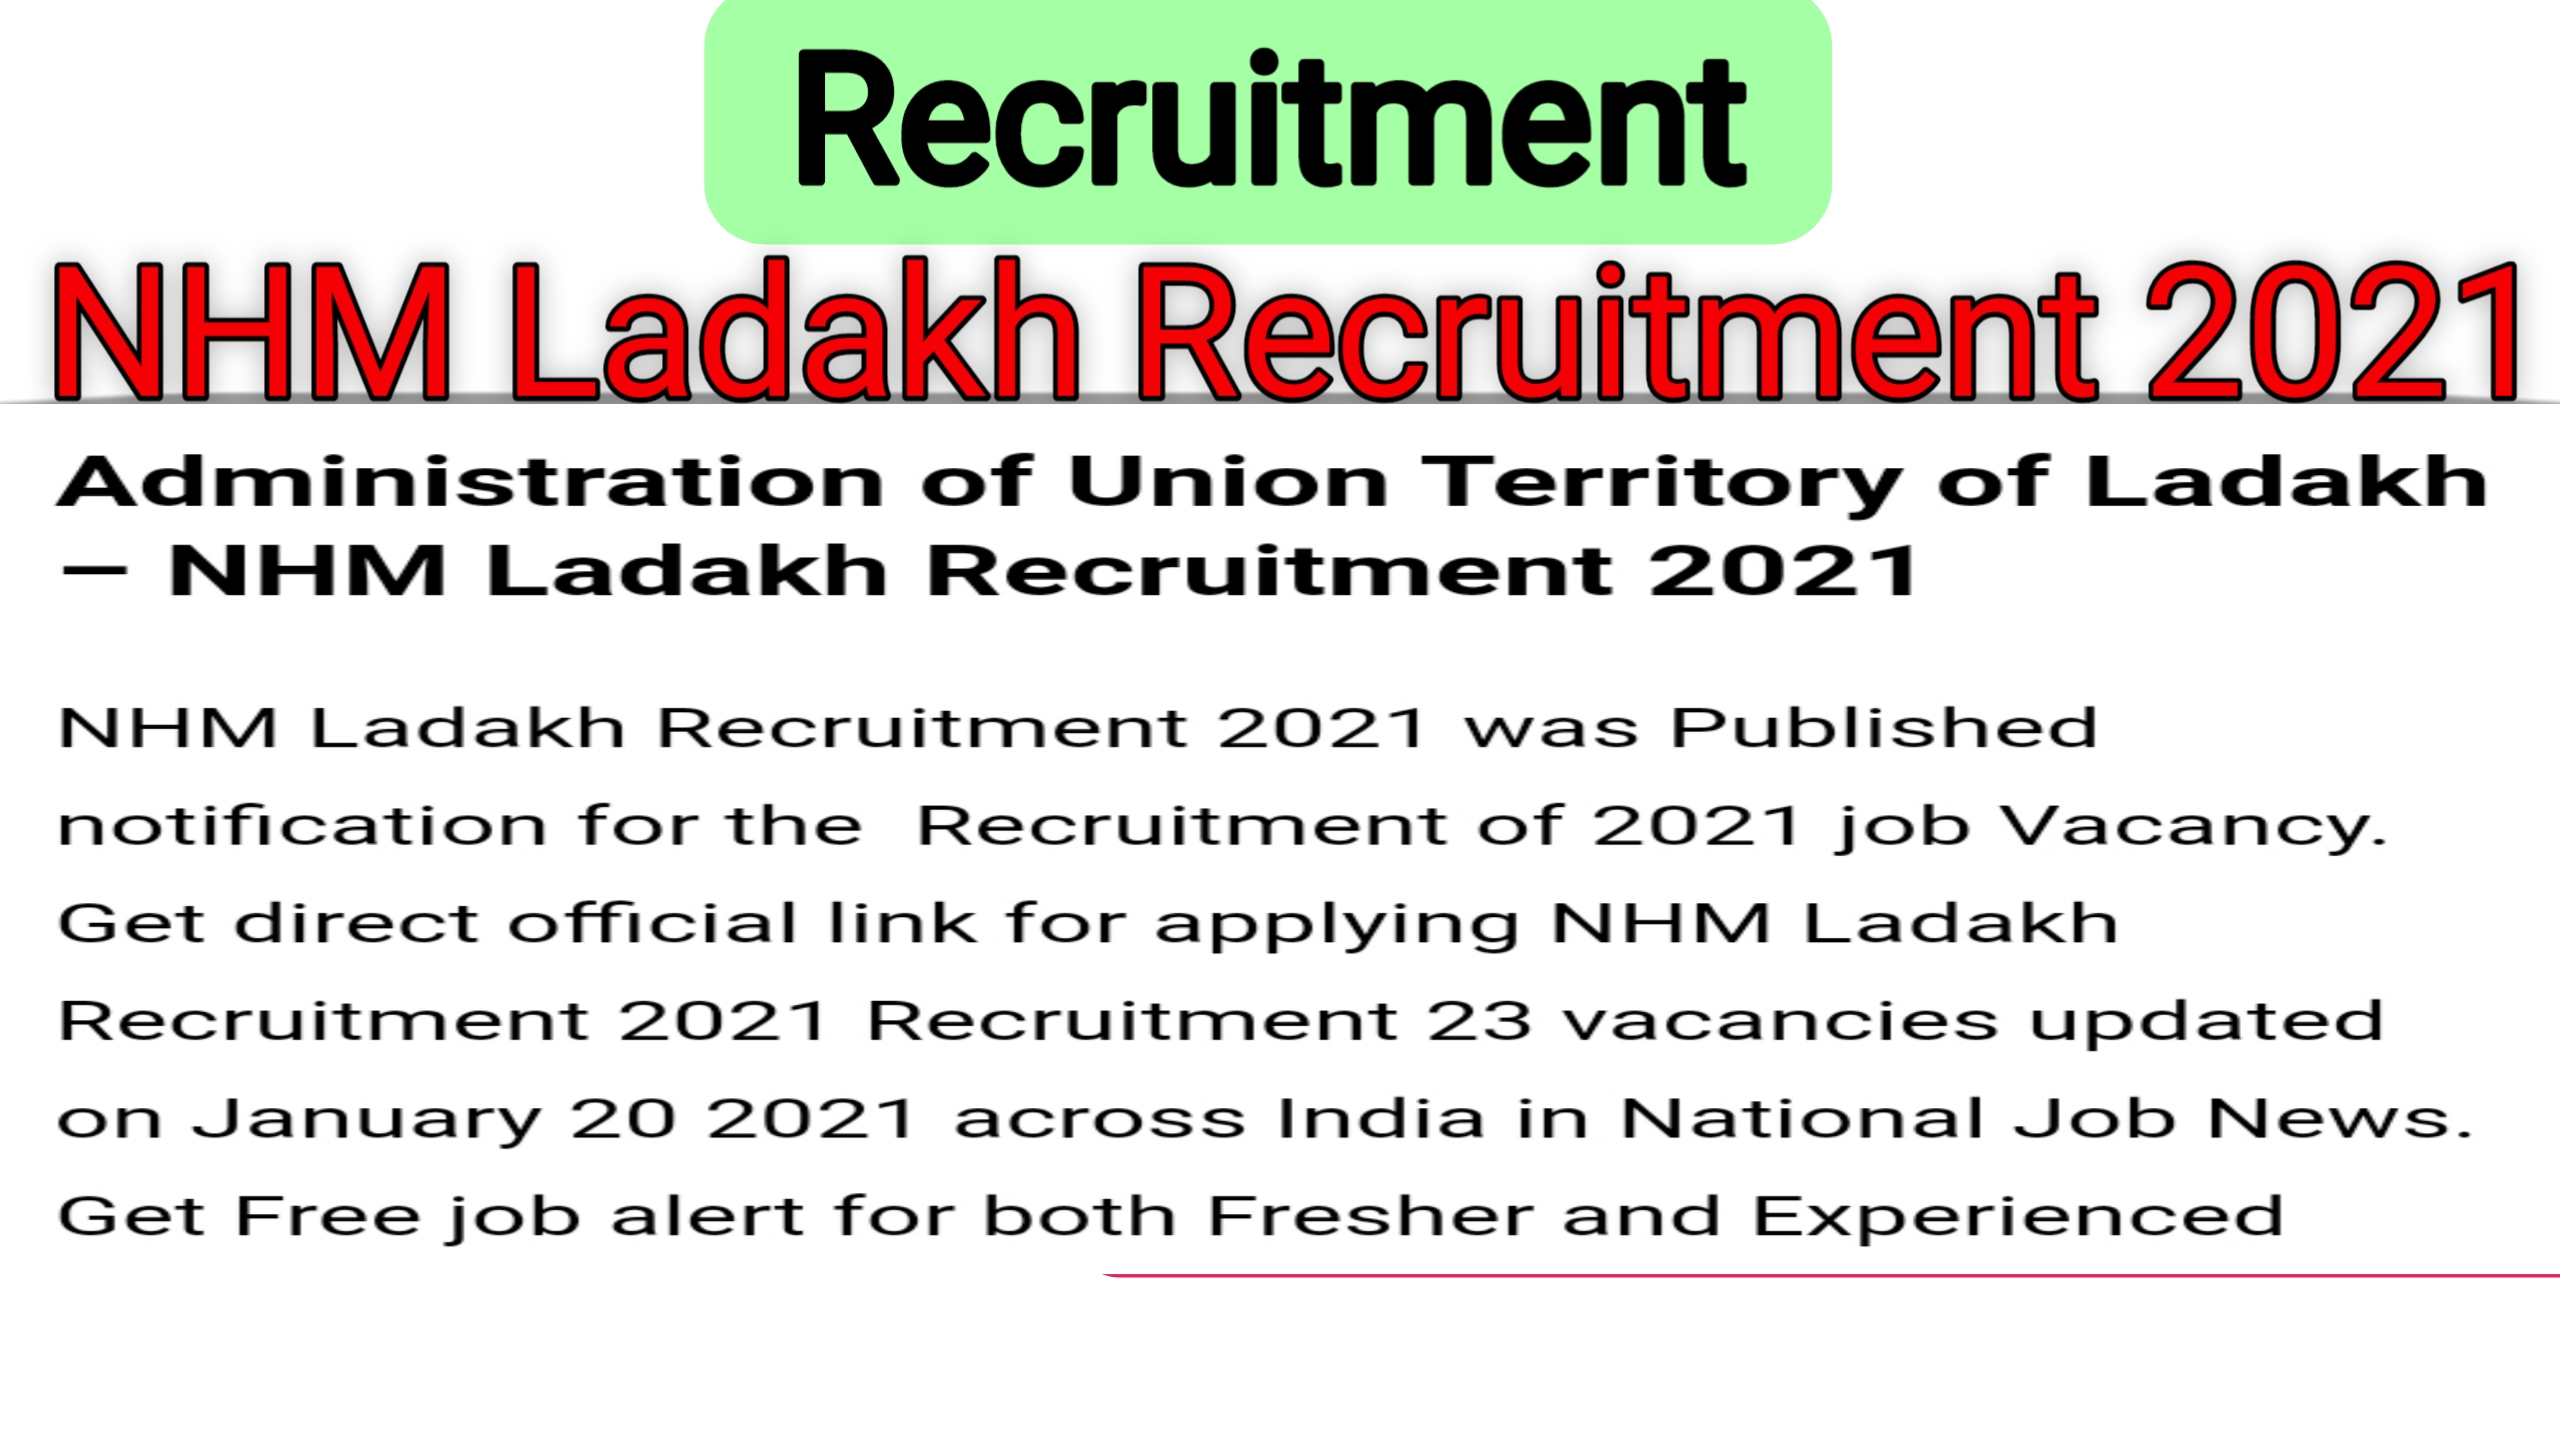 NHM Ladakh Recruitment 2021